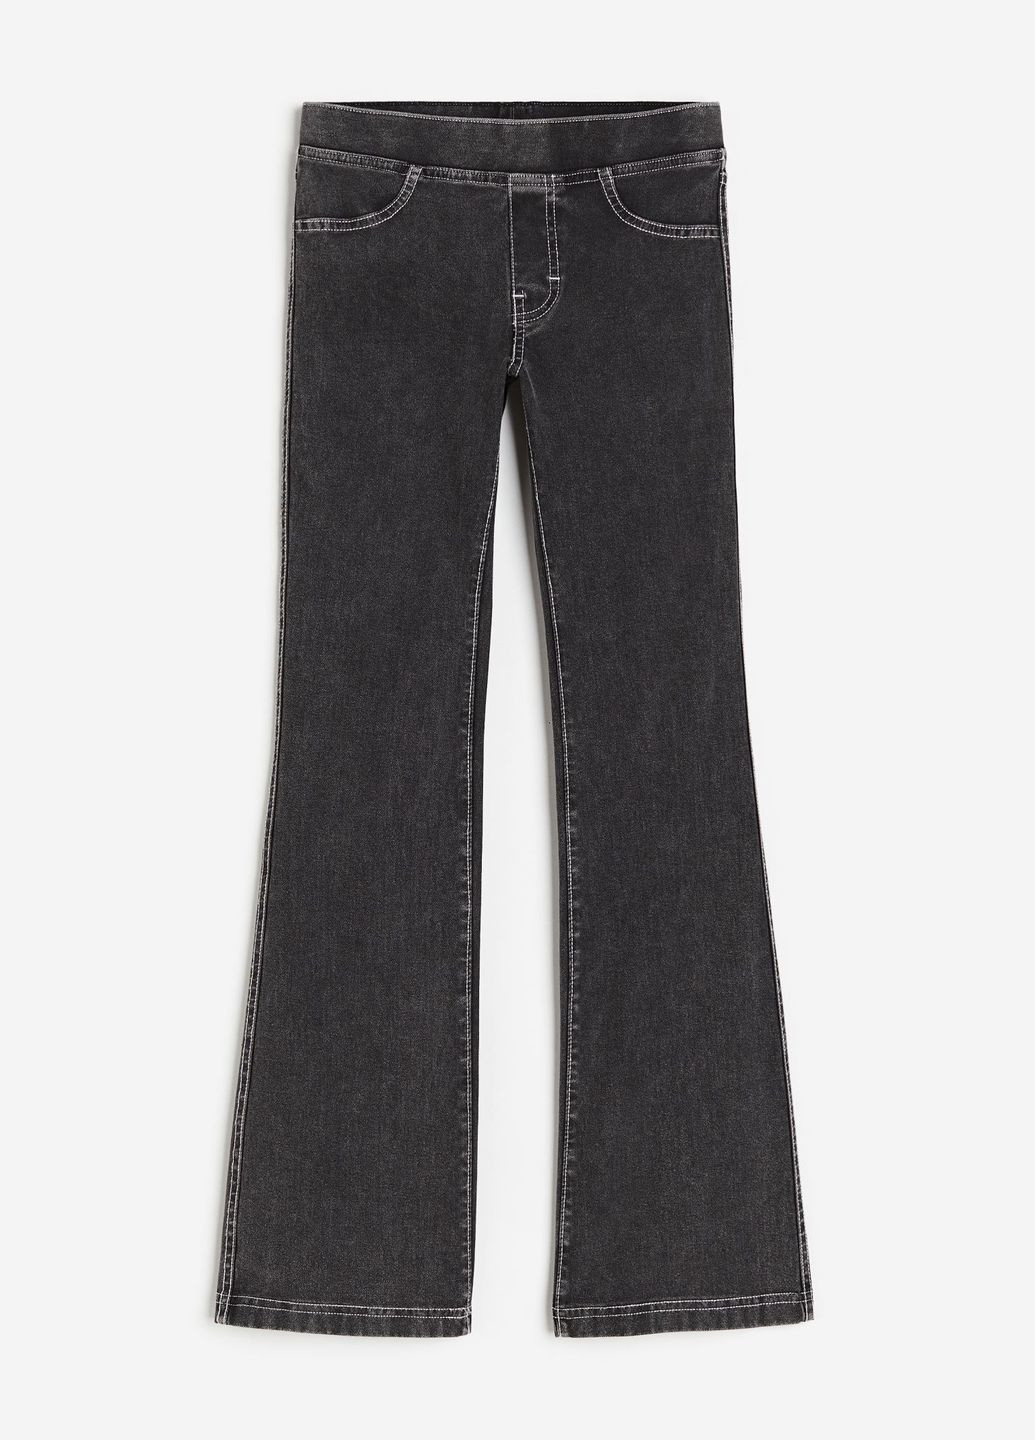 Черные демисезонные штаны джинсы клеш для девочки 9206 140 см черный 68978 H&M